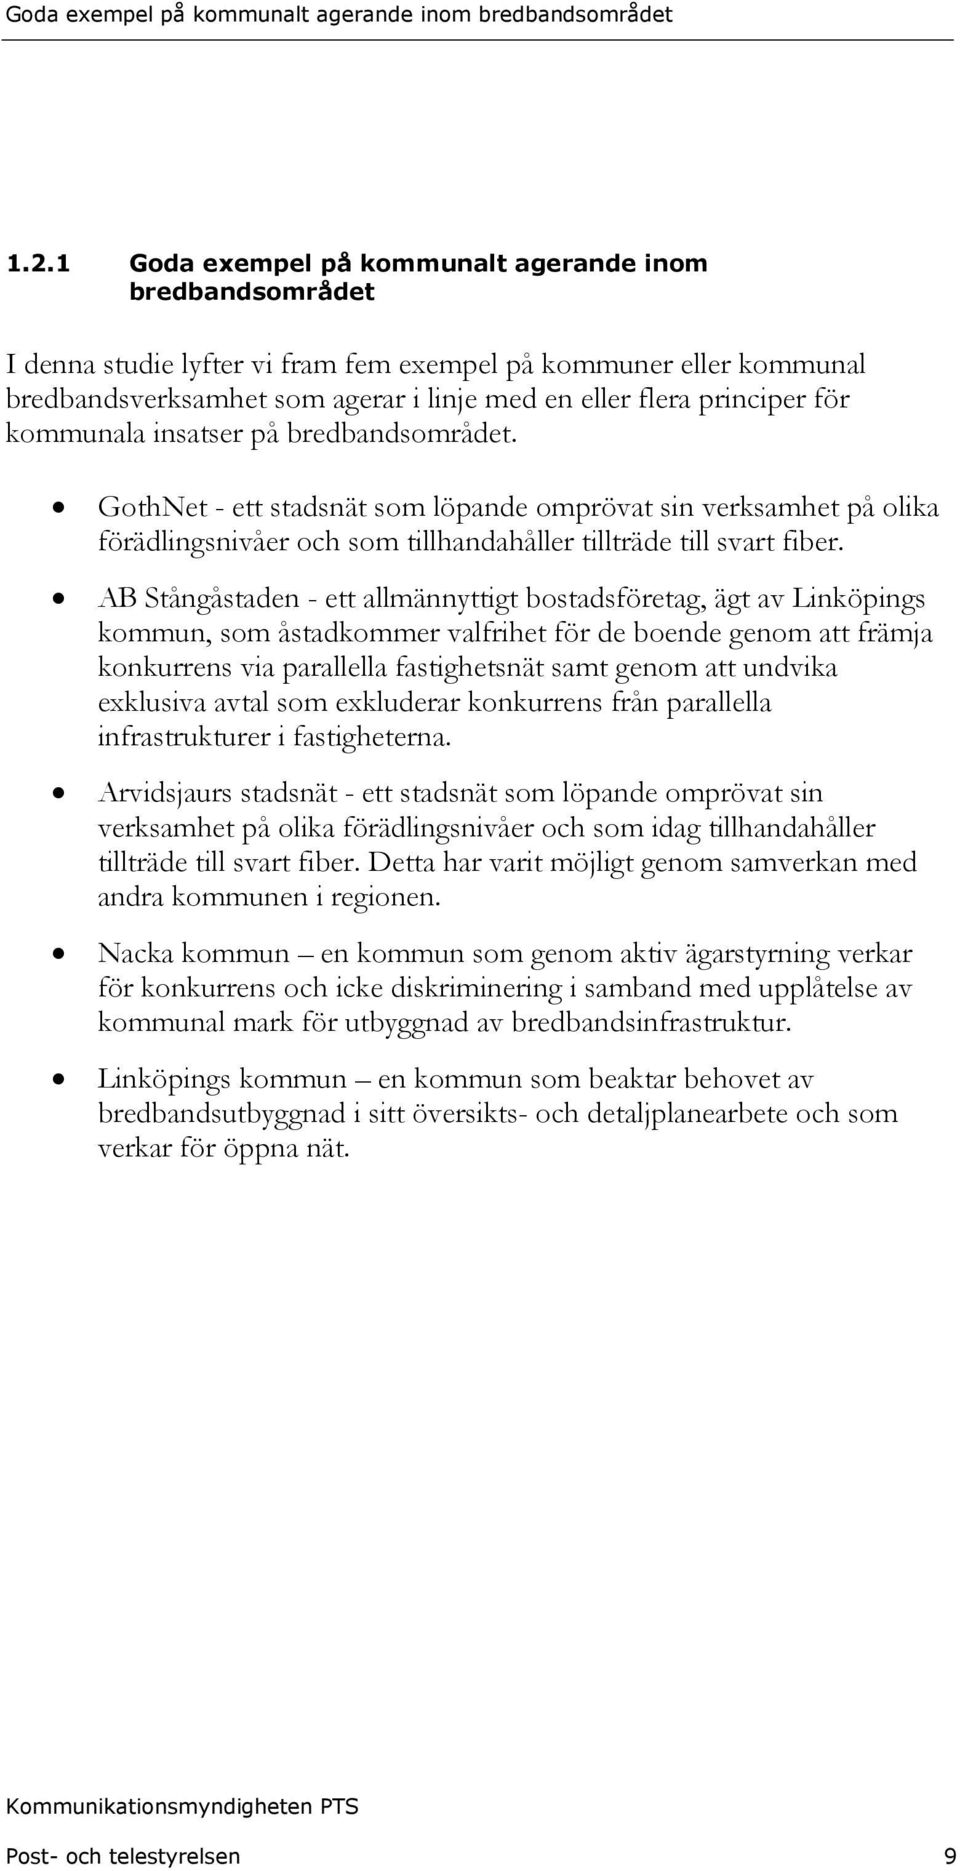 AB Stångåstaden - ett allmännyttigt bostadsföretag, ägt av Linköpings kommun, som åstadkommer valfrihet för de boende genom att främja konkurrens via parallella fastighetsnät samt genom att undvika